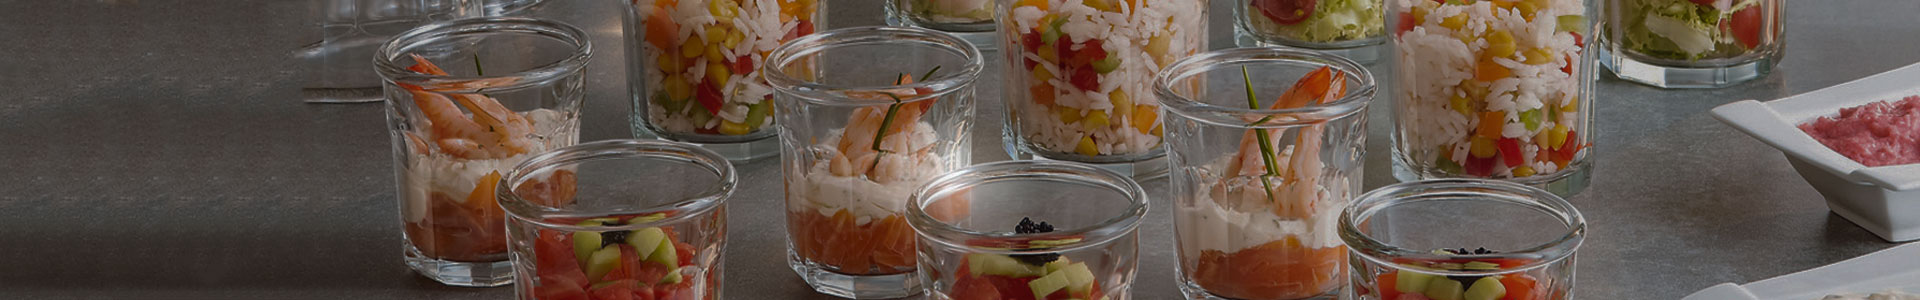 Arcoroc Eskale Gläschen mit Desserts gefüllt.